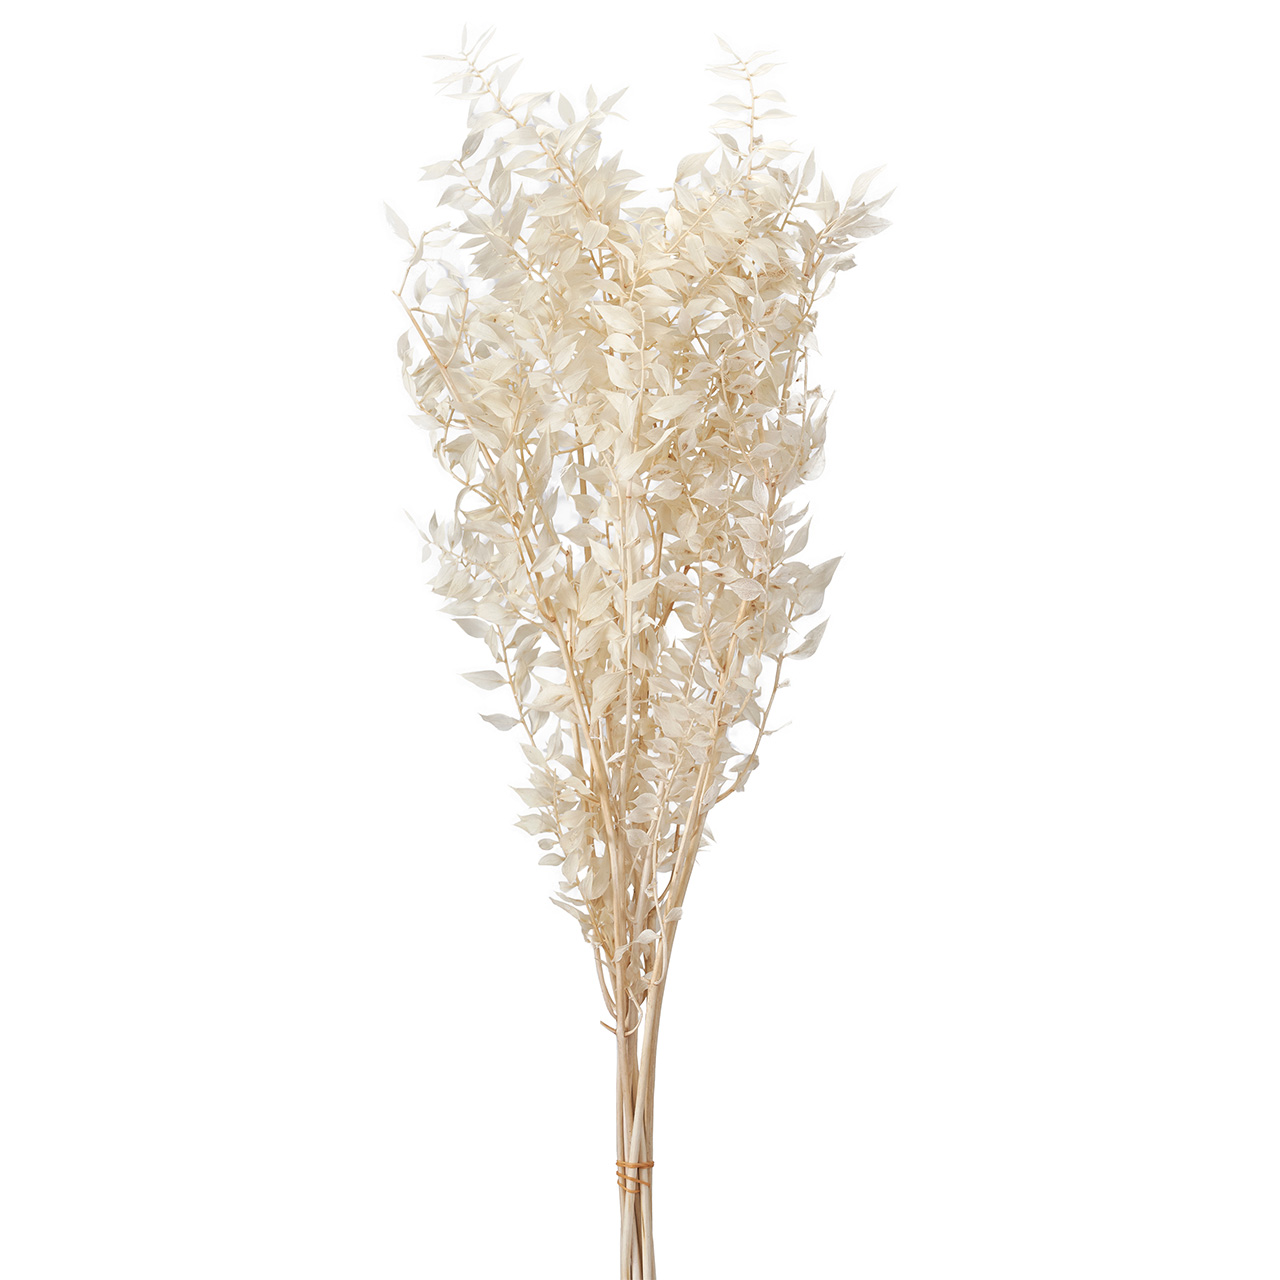 マイフラ】 通販/大地農園 ラスカス・プリザーブド オフホワイト プリザーブドフラワー DO003560-011(オフホワイト):  プリザーブドフラワー/全国にMAGIQ、花器、花資材などをお届けします。